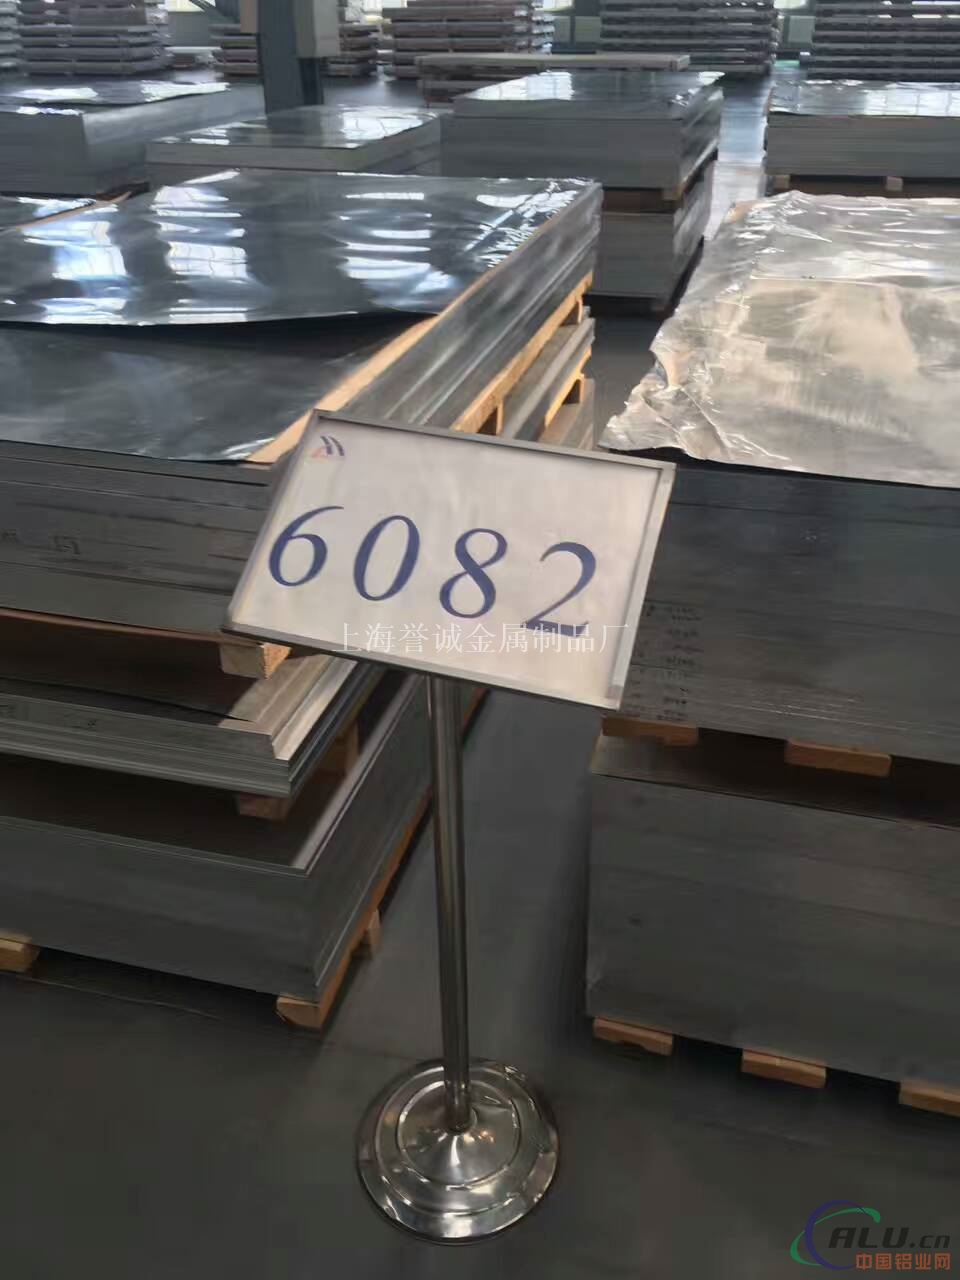 6082-T6铝棒硬度